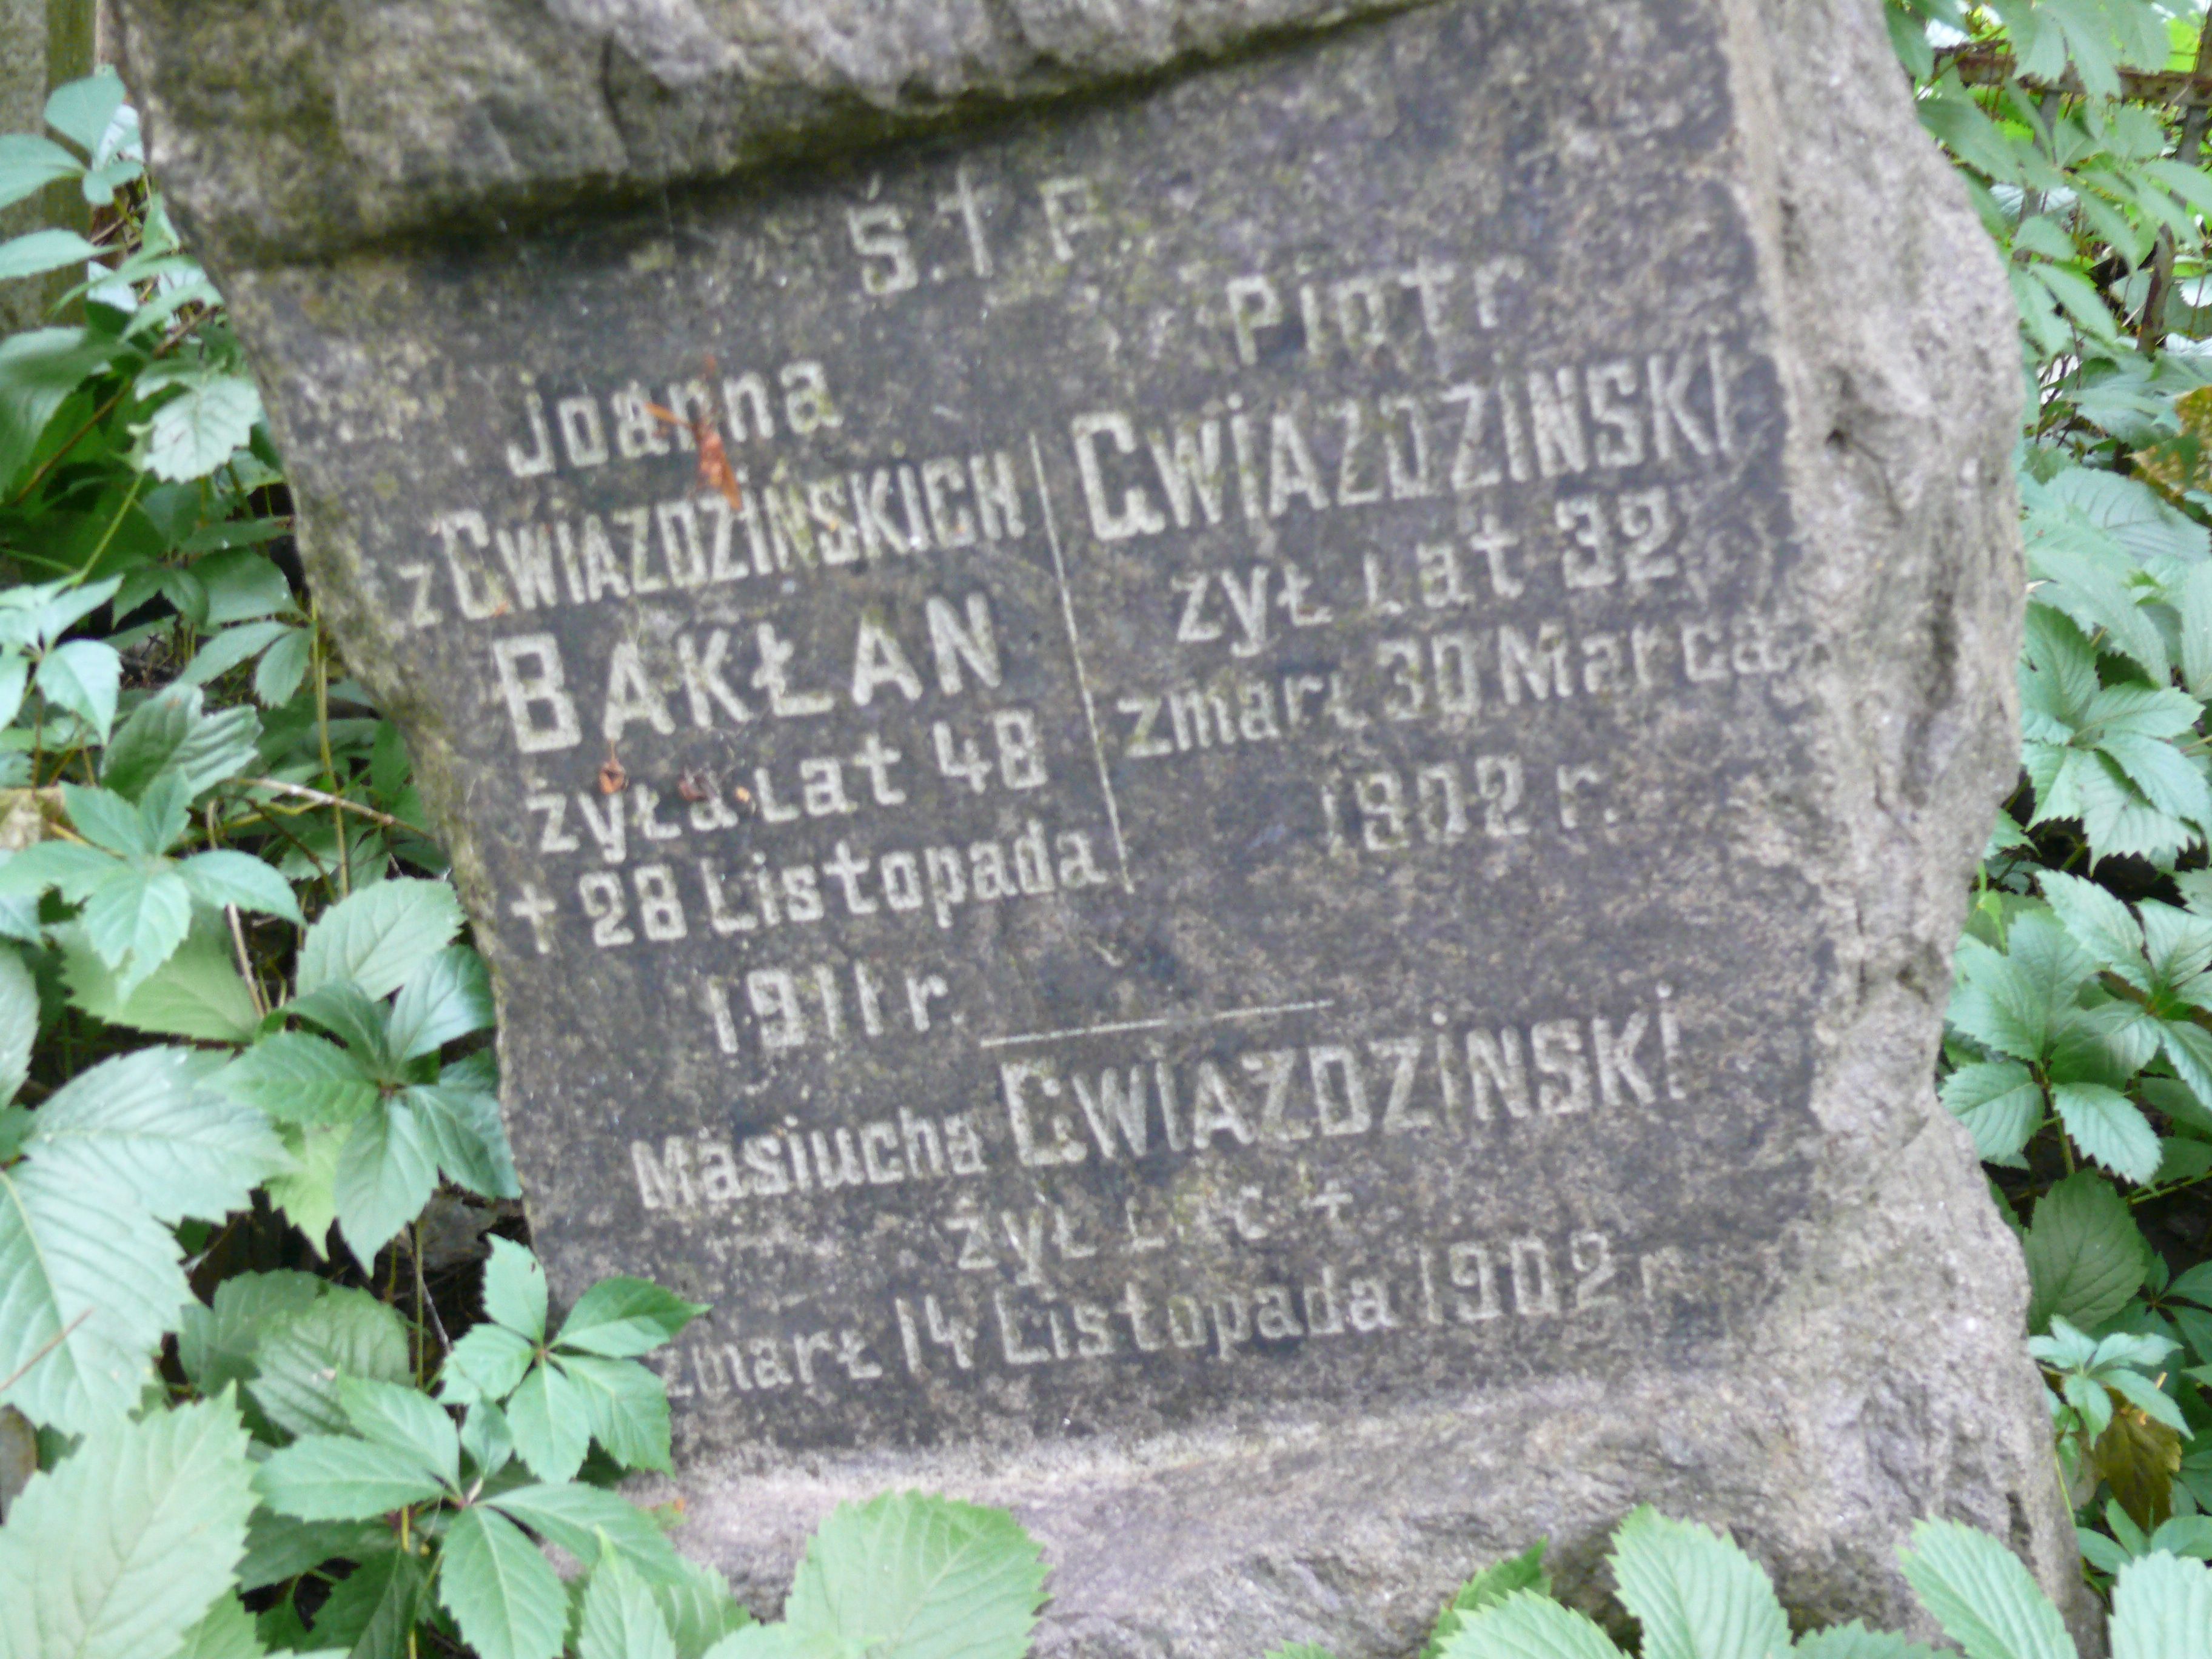 Gravestone inscription of Joanna Bakłan, Piotr Gwiaździński, Masiucha Gwiaździński